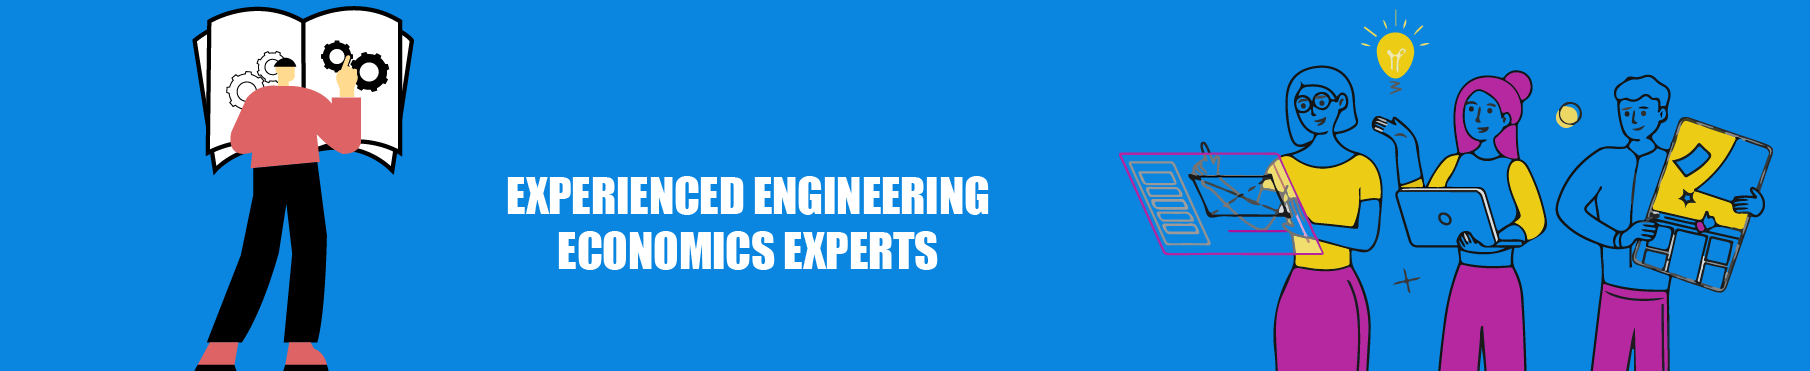 Experienced Engineering Economics Experts